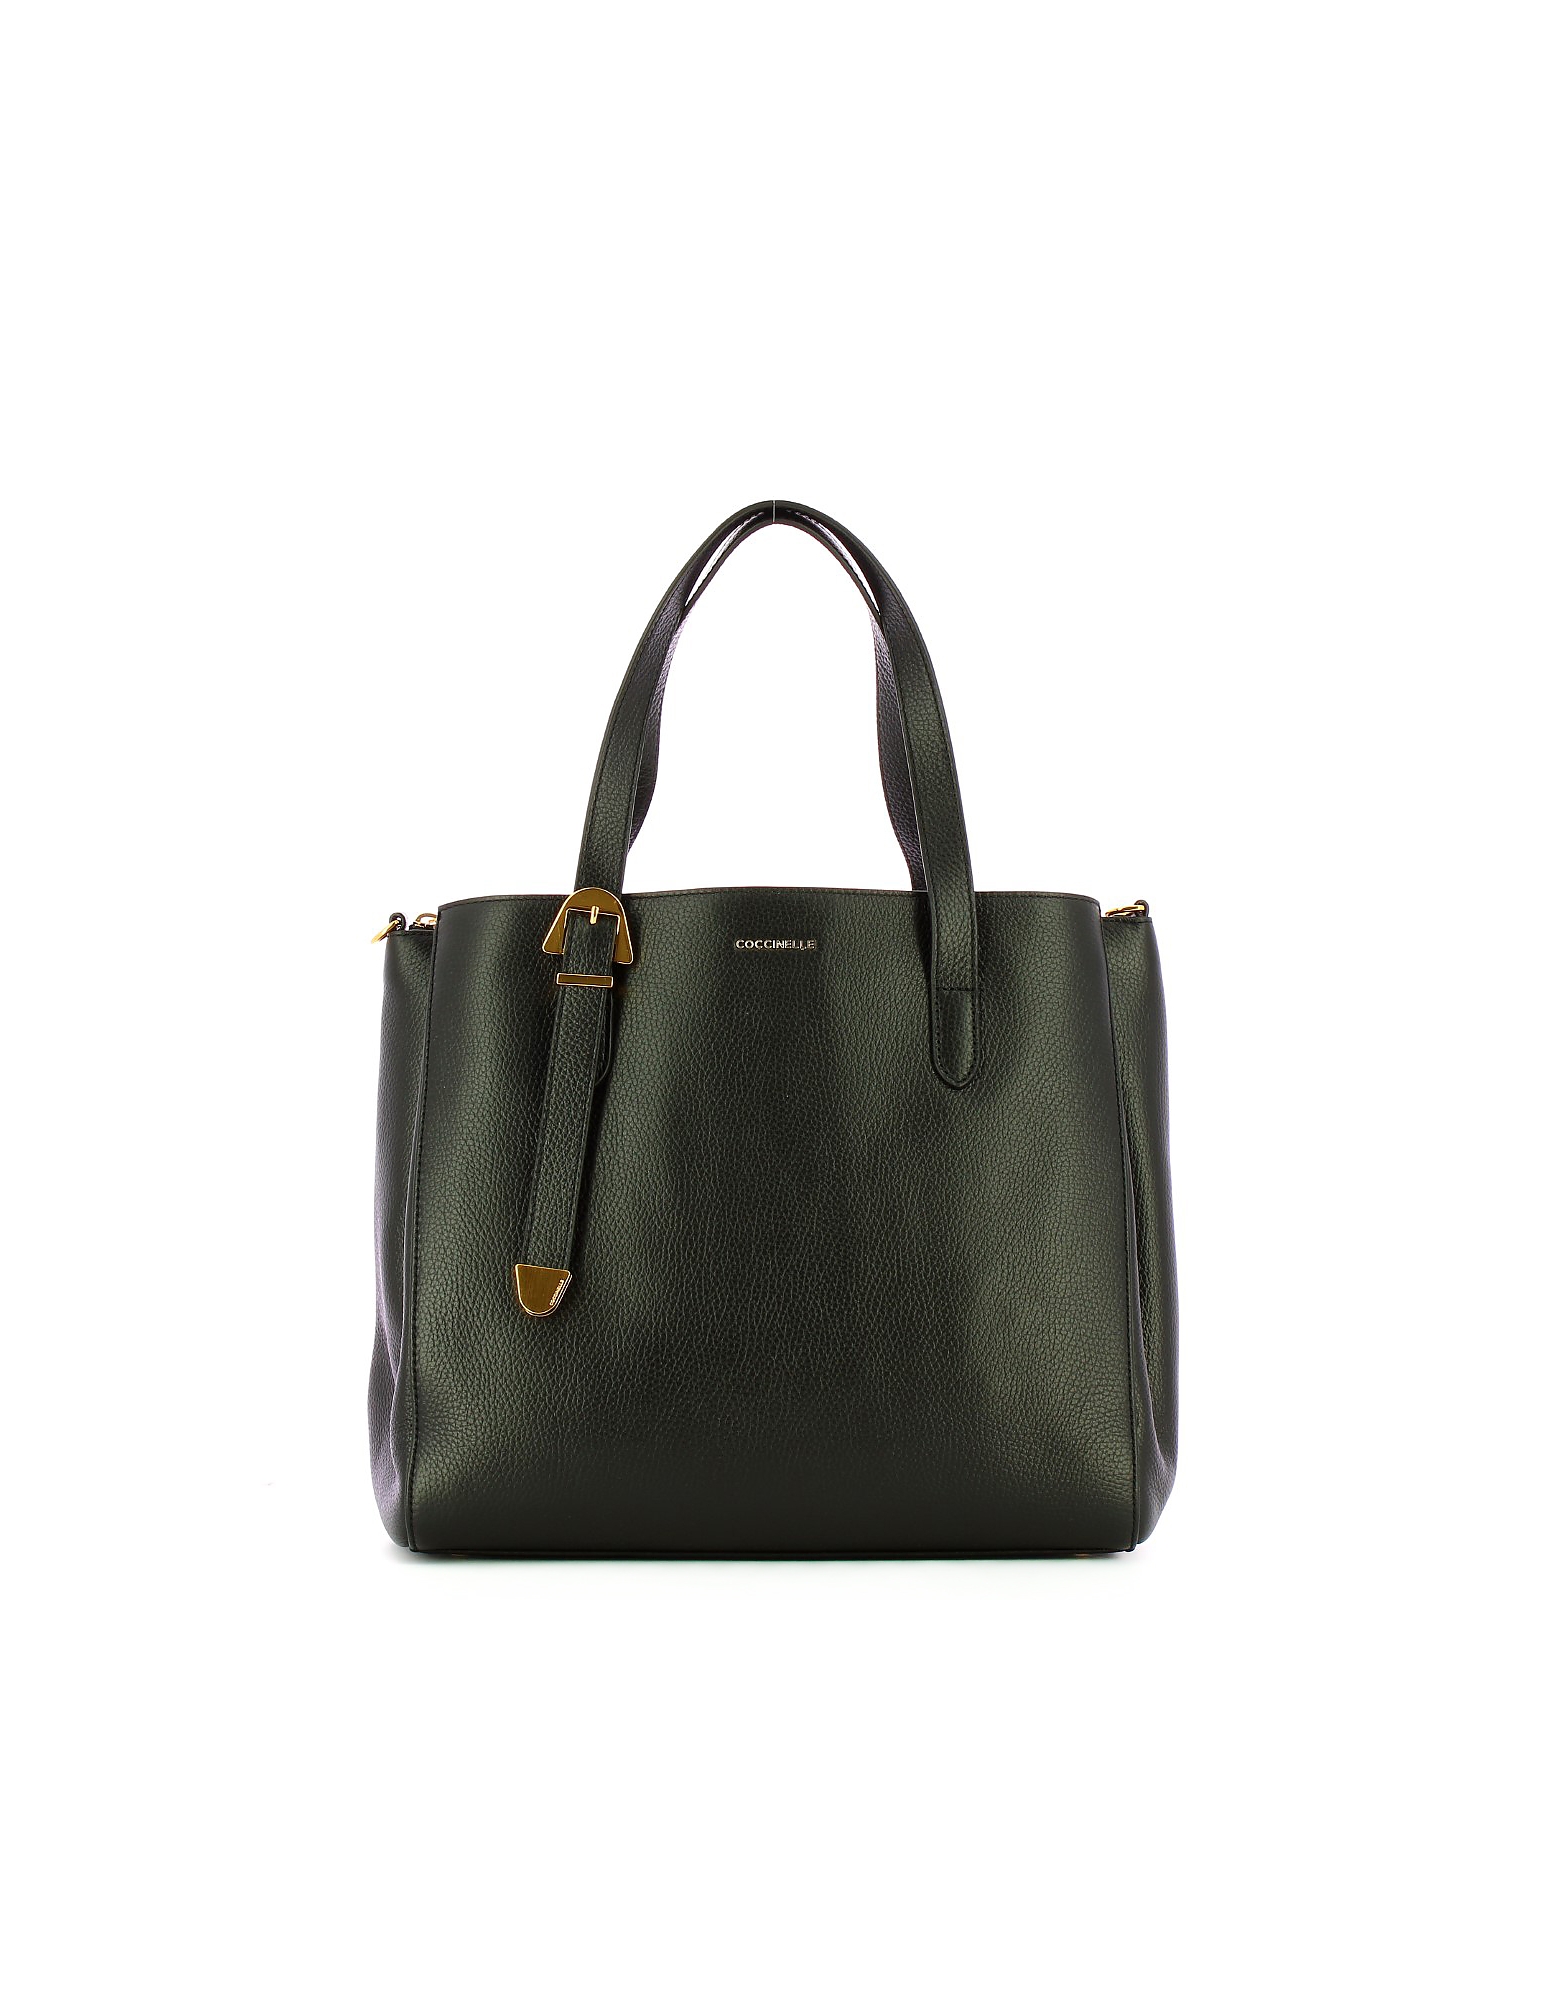 Coccinelle Designer Handbags Women's Black Bag In Noir